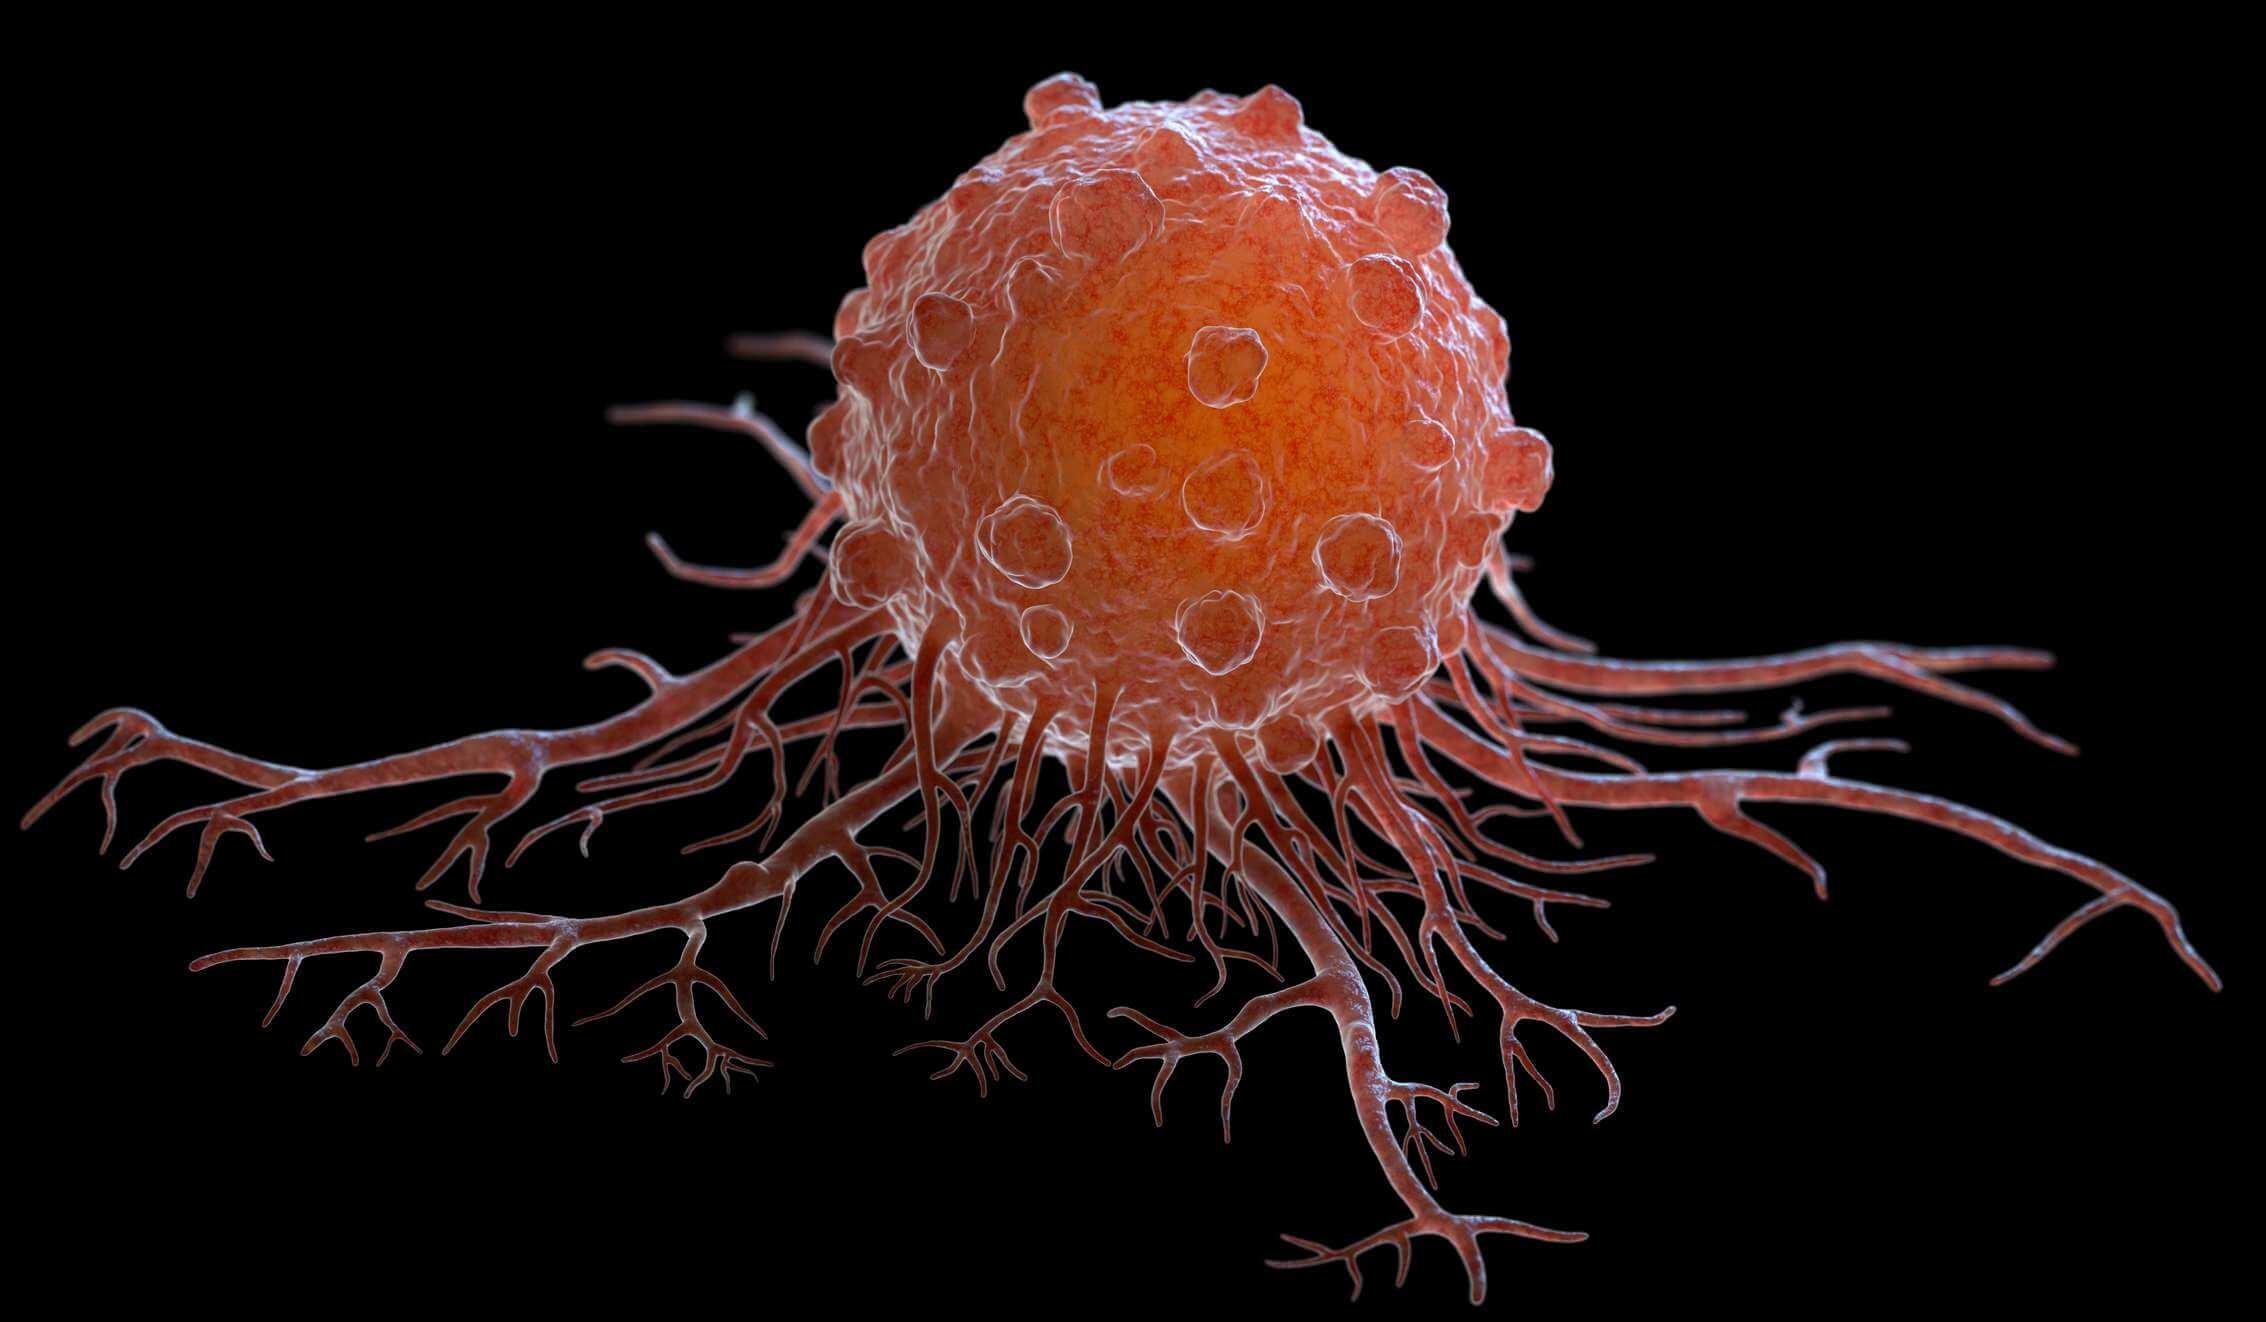 Krebszellen können in andere Körpergewebe oder Organe wandern und dort Metastasen bilden. 3D-Darstellung